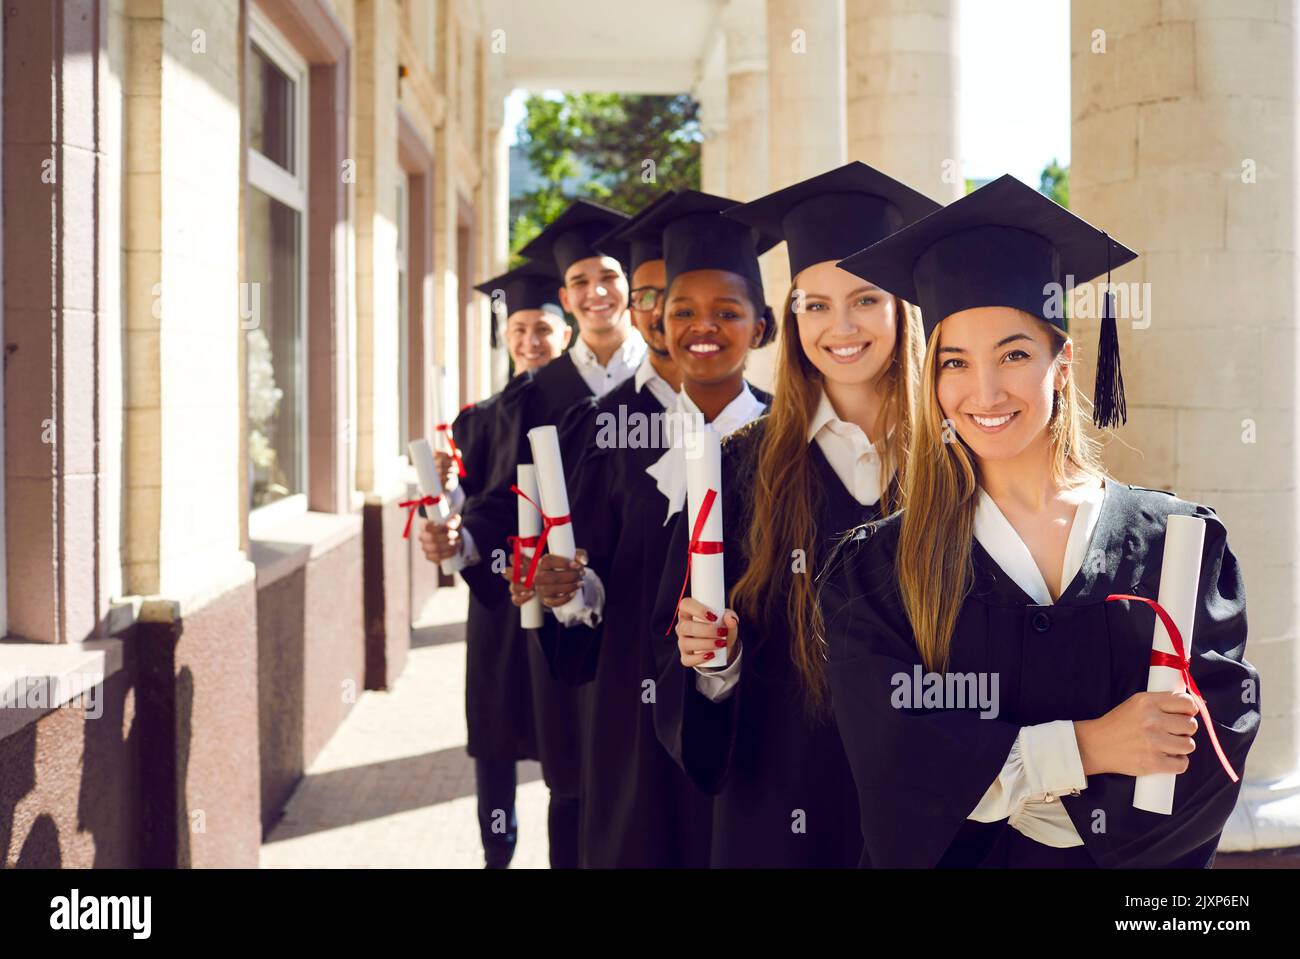 Portrait de jeunes diplômés d'université de sexe féminin et masculin titulaires de diplômes d'enseignement supérieur. Banque D'Images